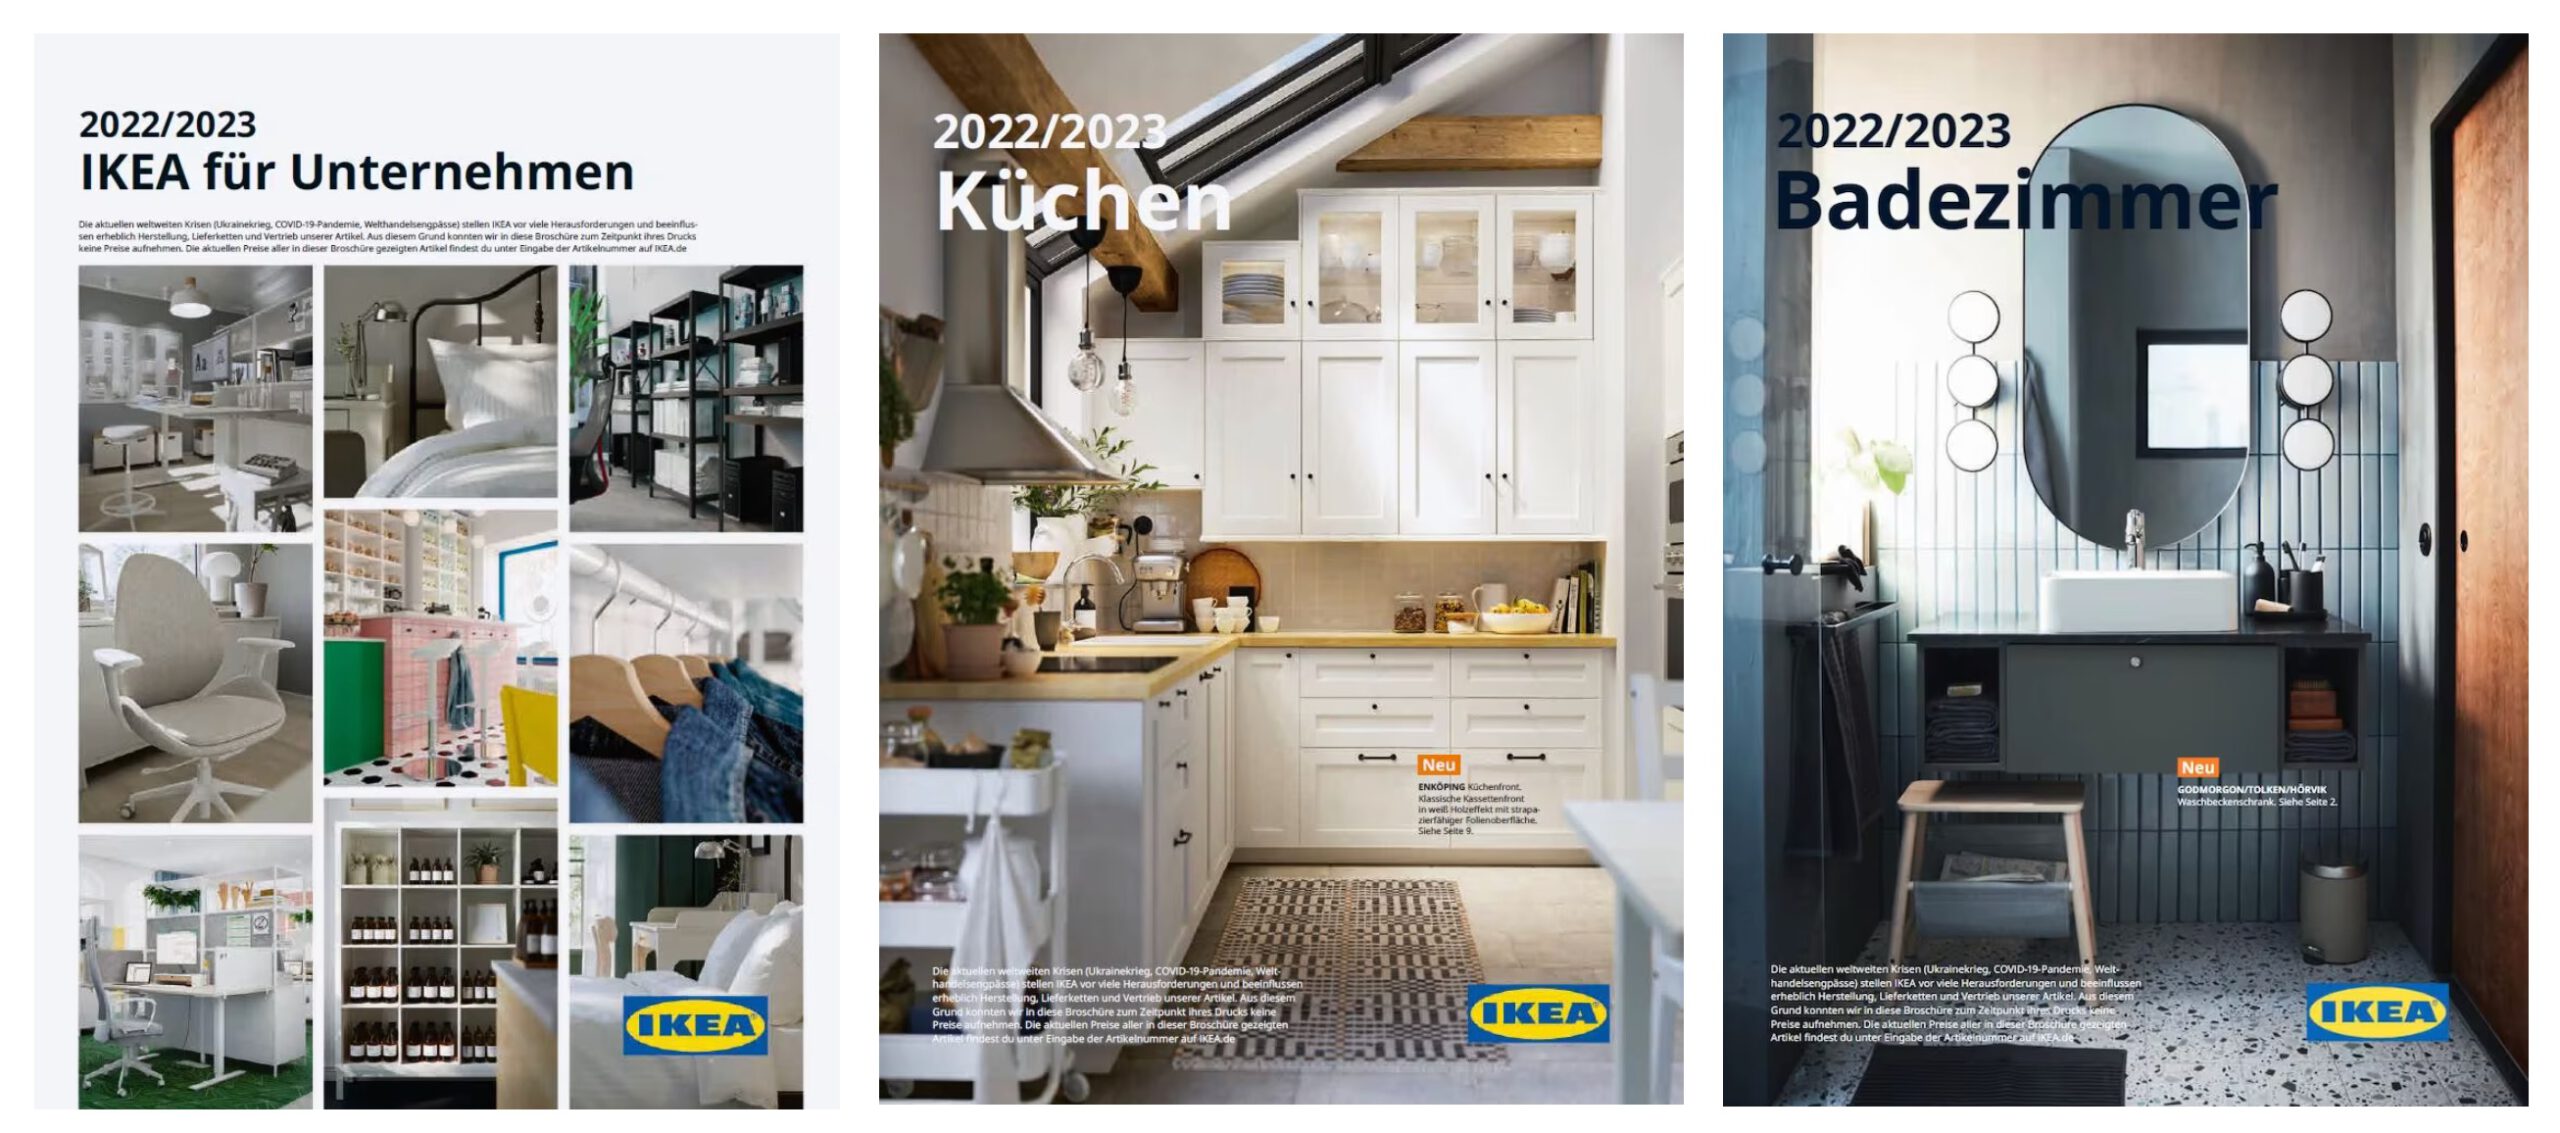 Fotos im IKEA-Katalog sind in der Regel keine Fotos mehr.